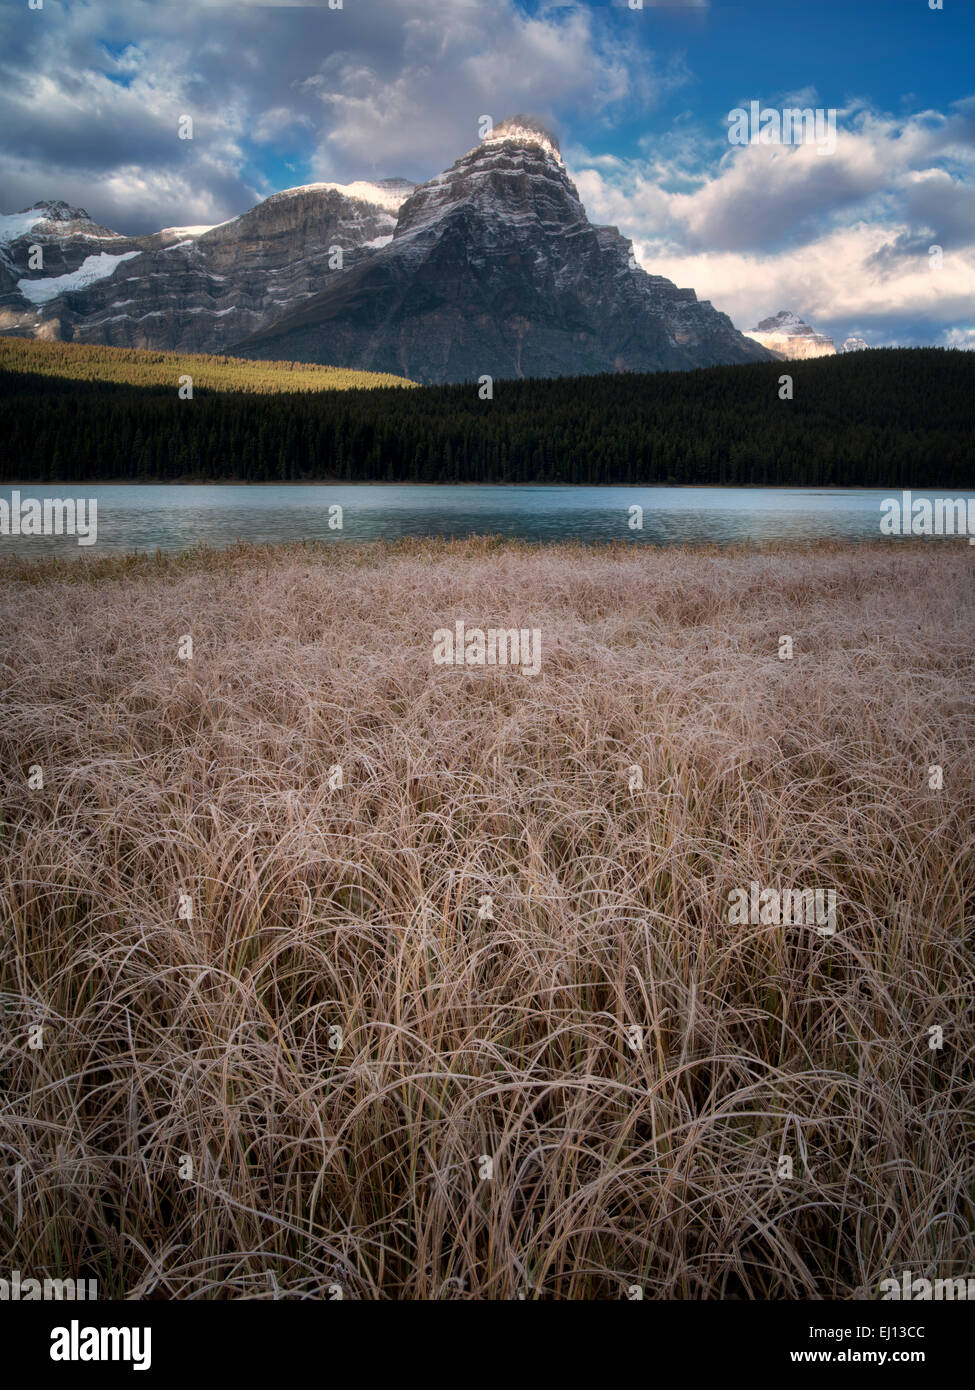 Wasservögel Seen mit frostigen Gräsern und Berge. Banff Nationalpark, Alberta Kanada. Stockfoto